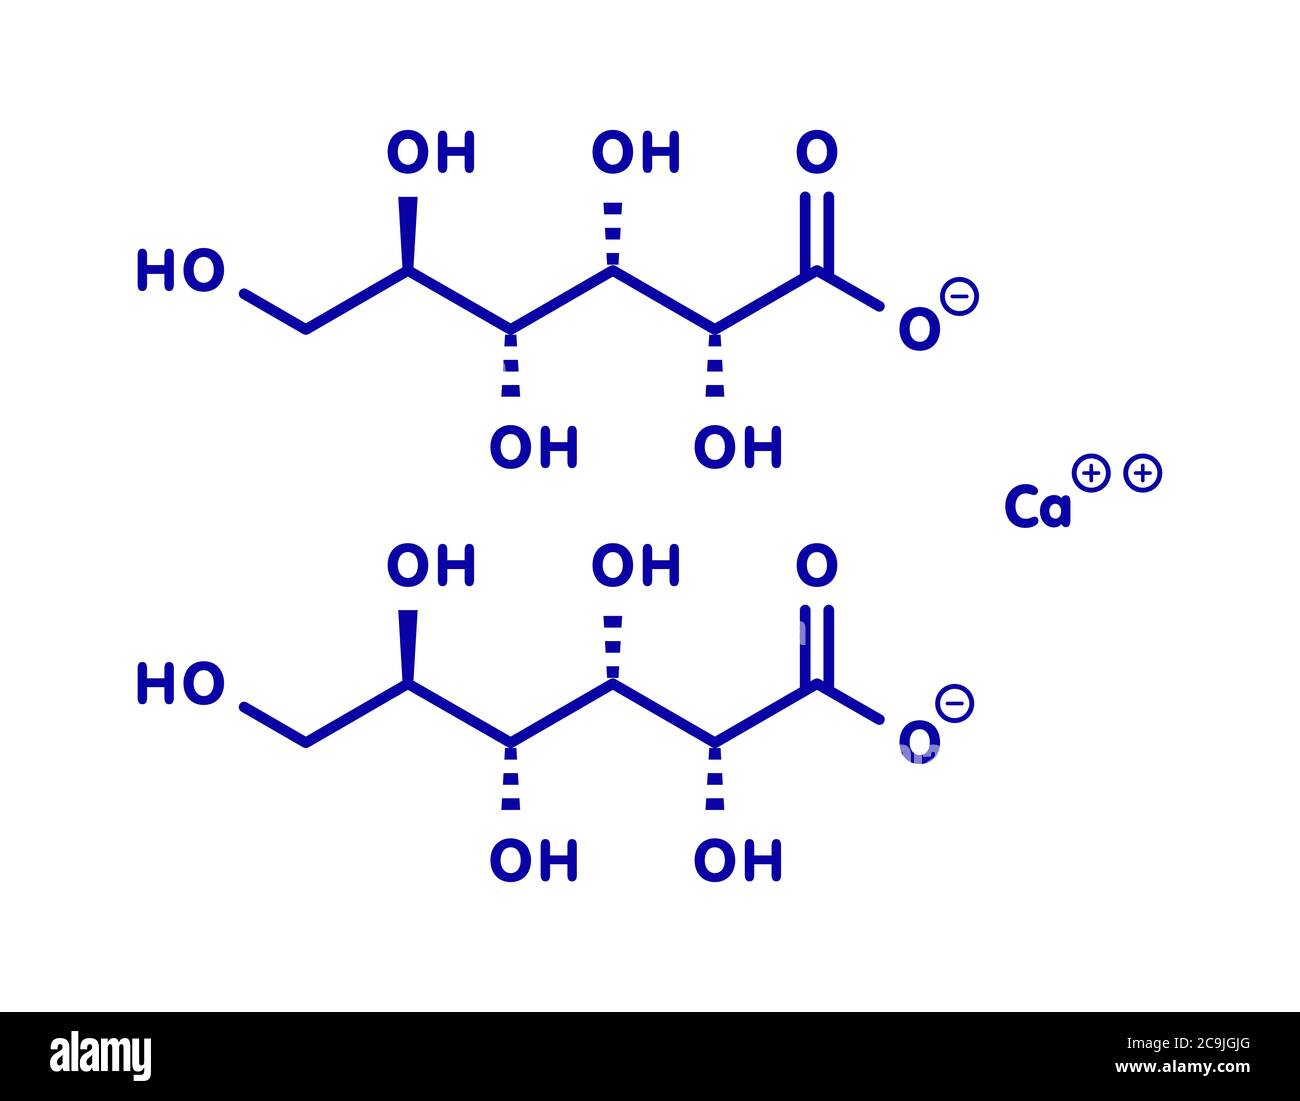 Calciumgluconat-Medikament. Lösliche Form von Ca, verwendet, um Magnesium  Überdosis, Hypokalzämie und Fluorwasserstoffsäure (HF) Verbrennungen zu  behandeln. Blaue Skelettformel ein Stockfotografie - Alamy